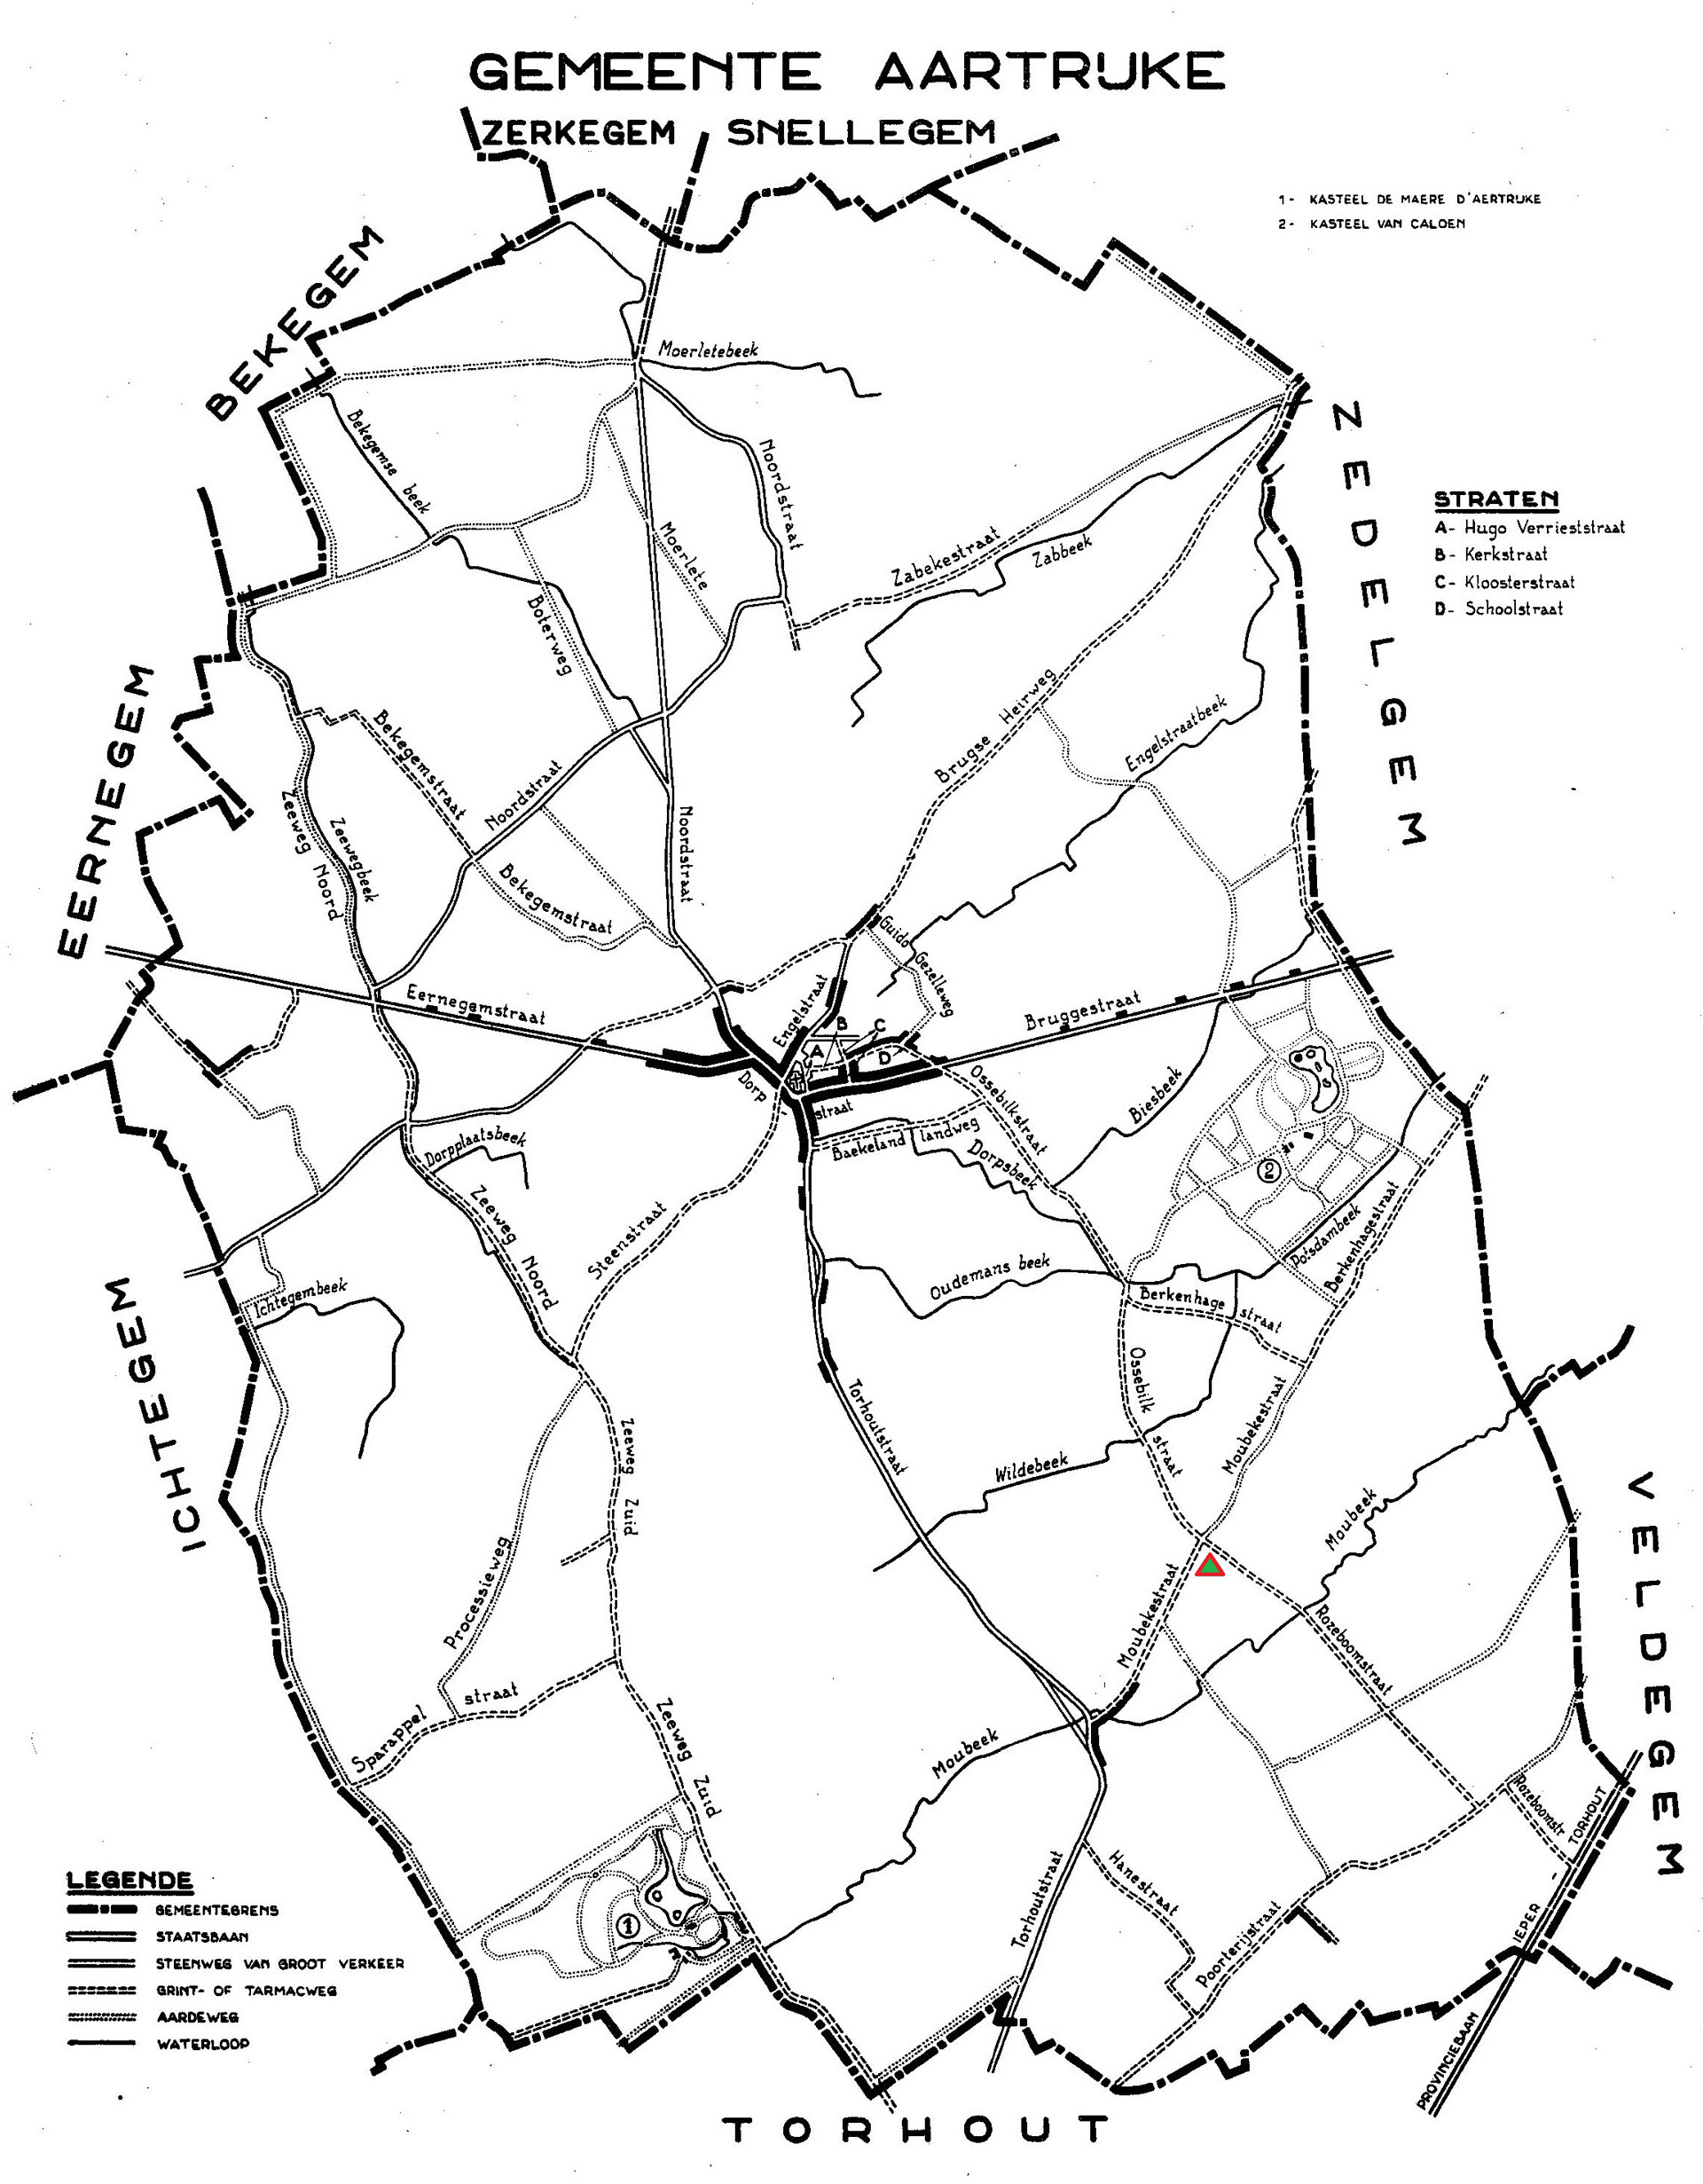 Plan de la commune d’Aartrijke (1959) │ Le triangle rouge et vert indique l’emplacement du camp des prisonniers italiens en 1918 │ Source : Dit is West-Vlaanderen. Steden – Gemeenten - Bevolking, Deel 1, St-Andries, Flandria, 1959, p.48.